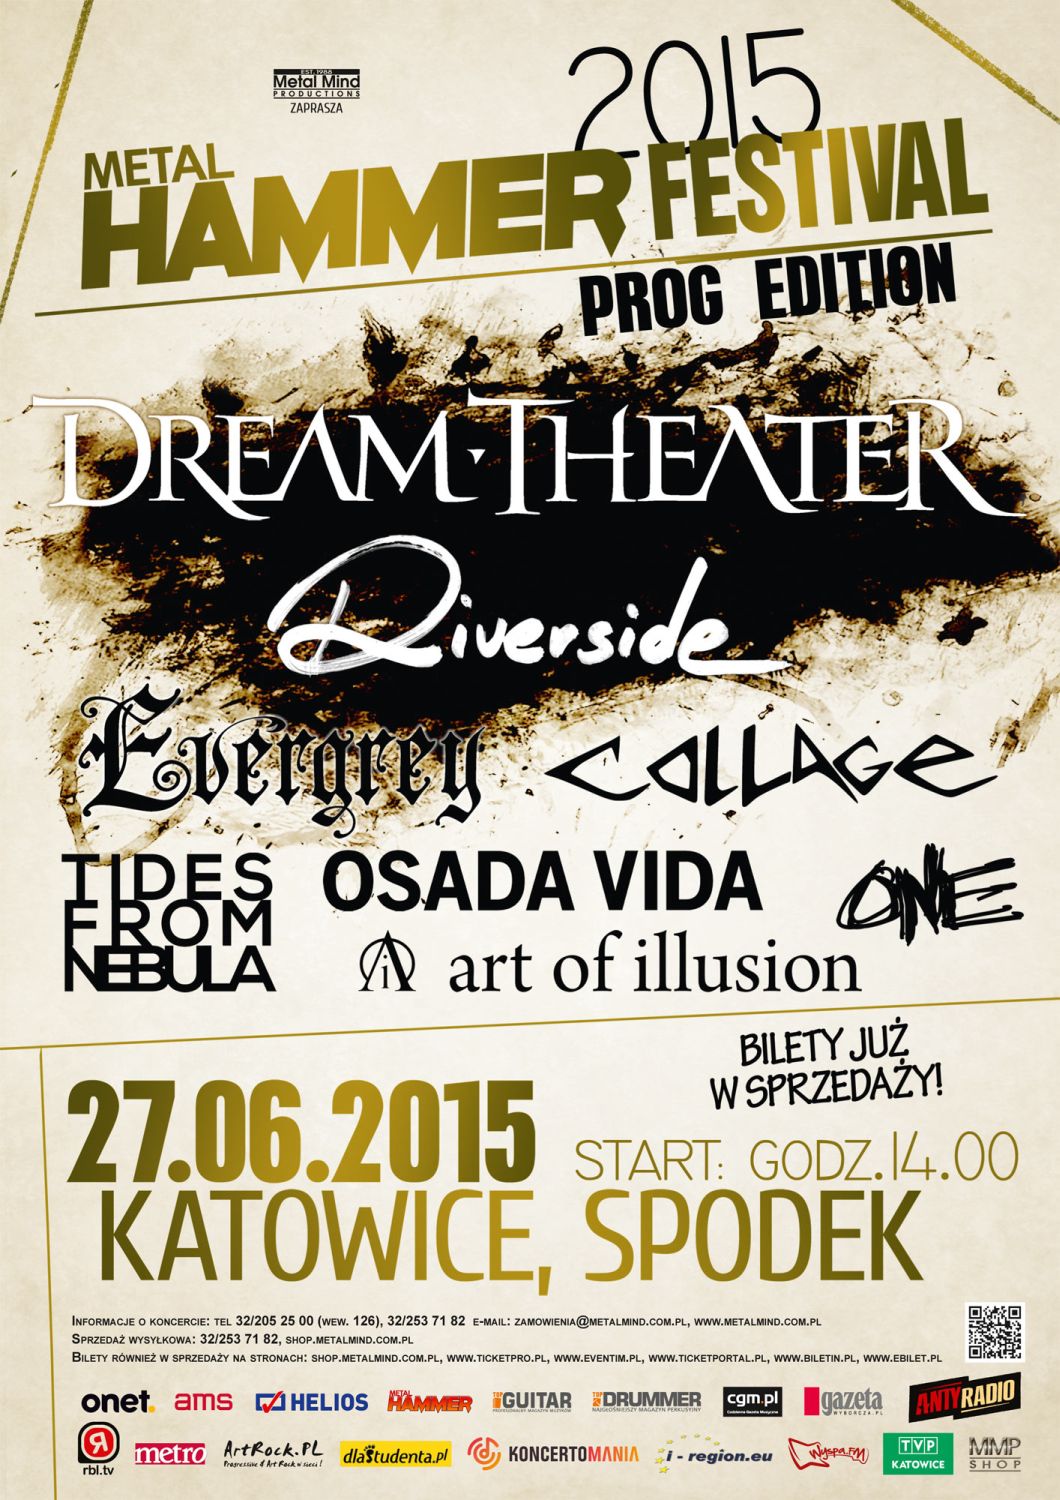 METAL HAMMER FESTIVAL 2015 - Prog Edition